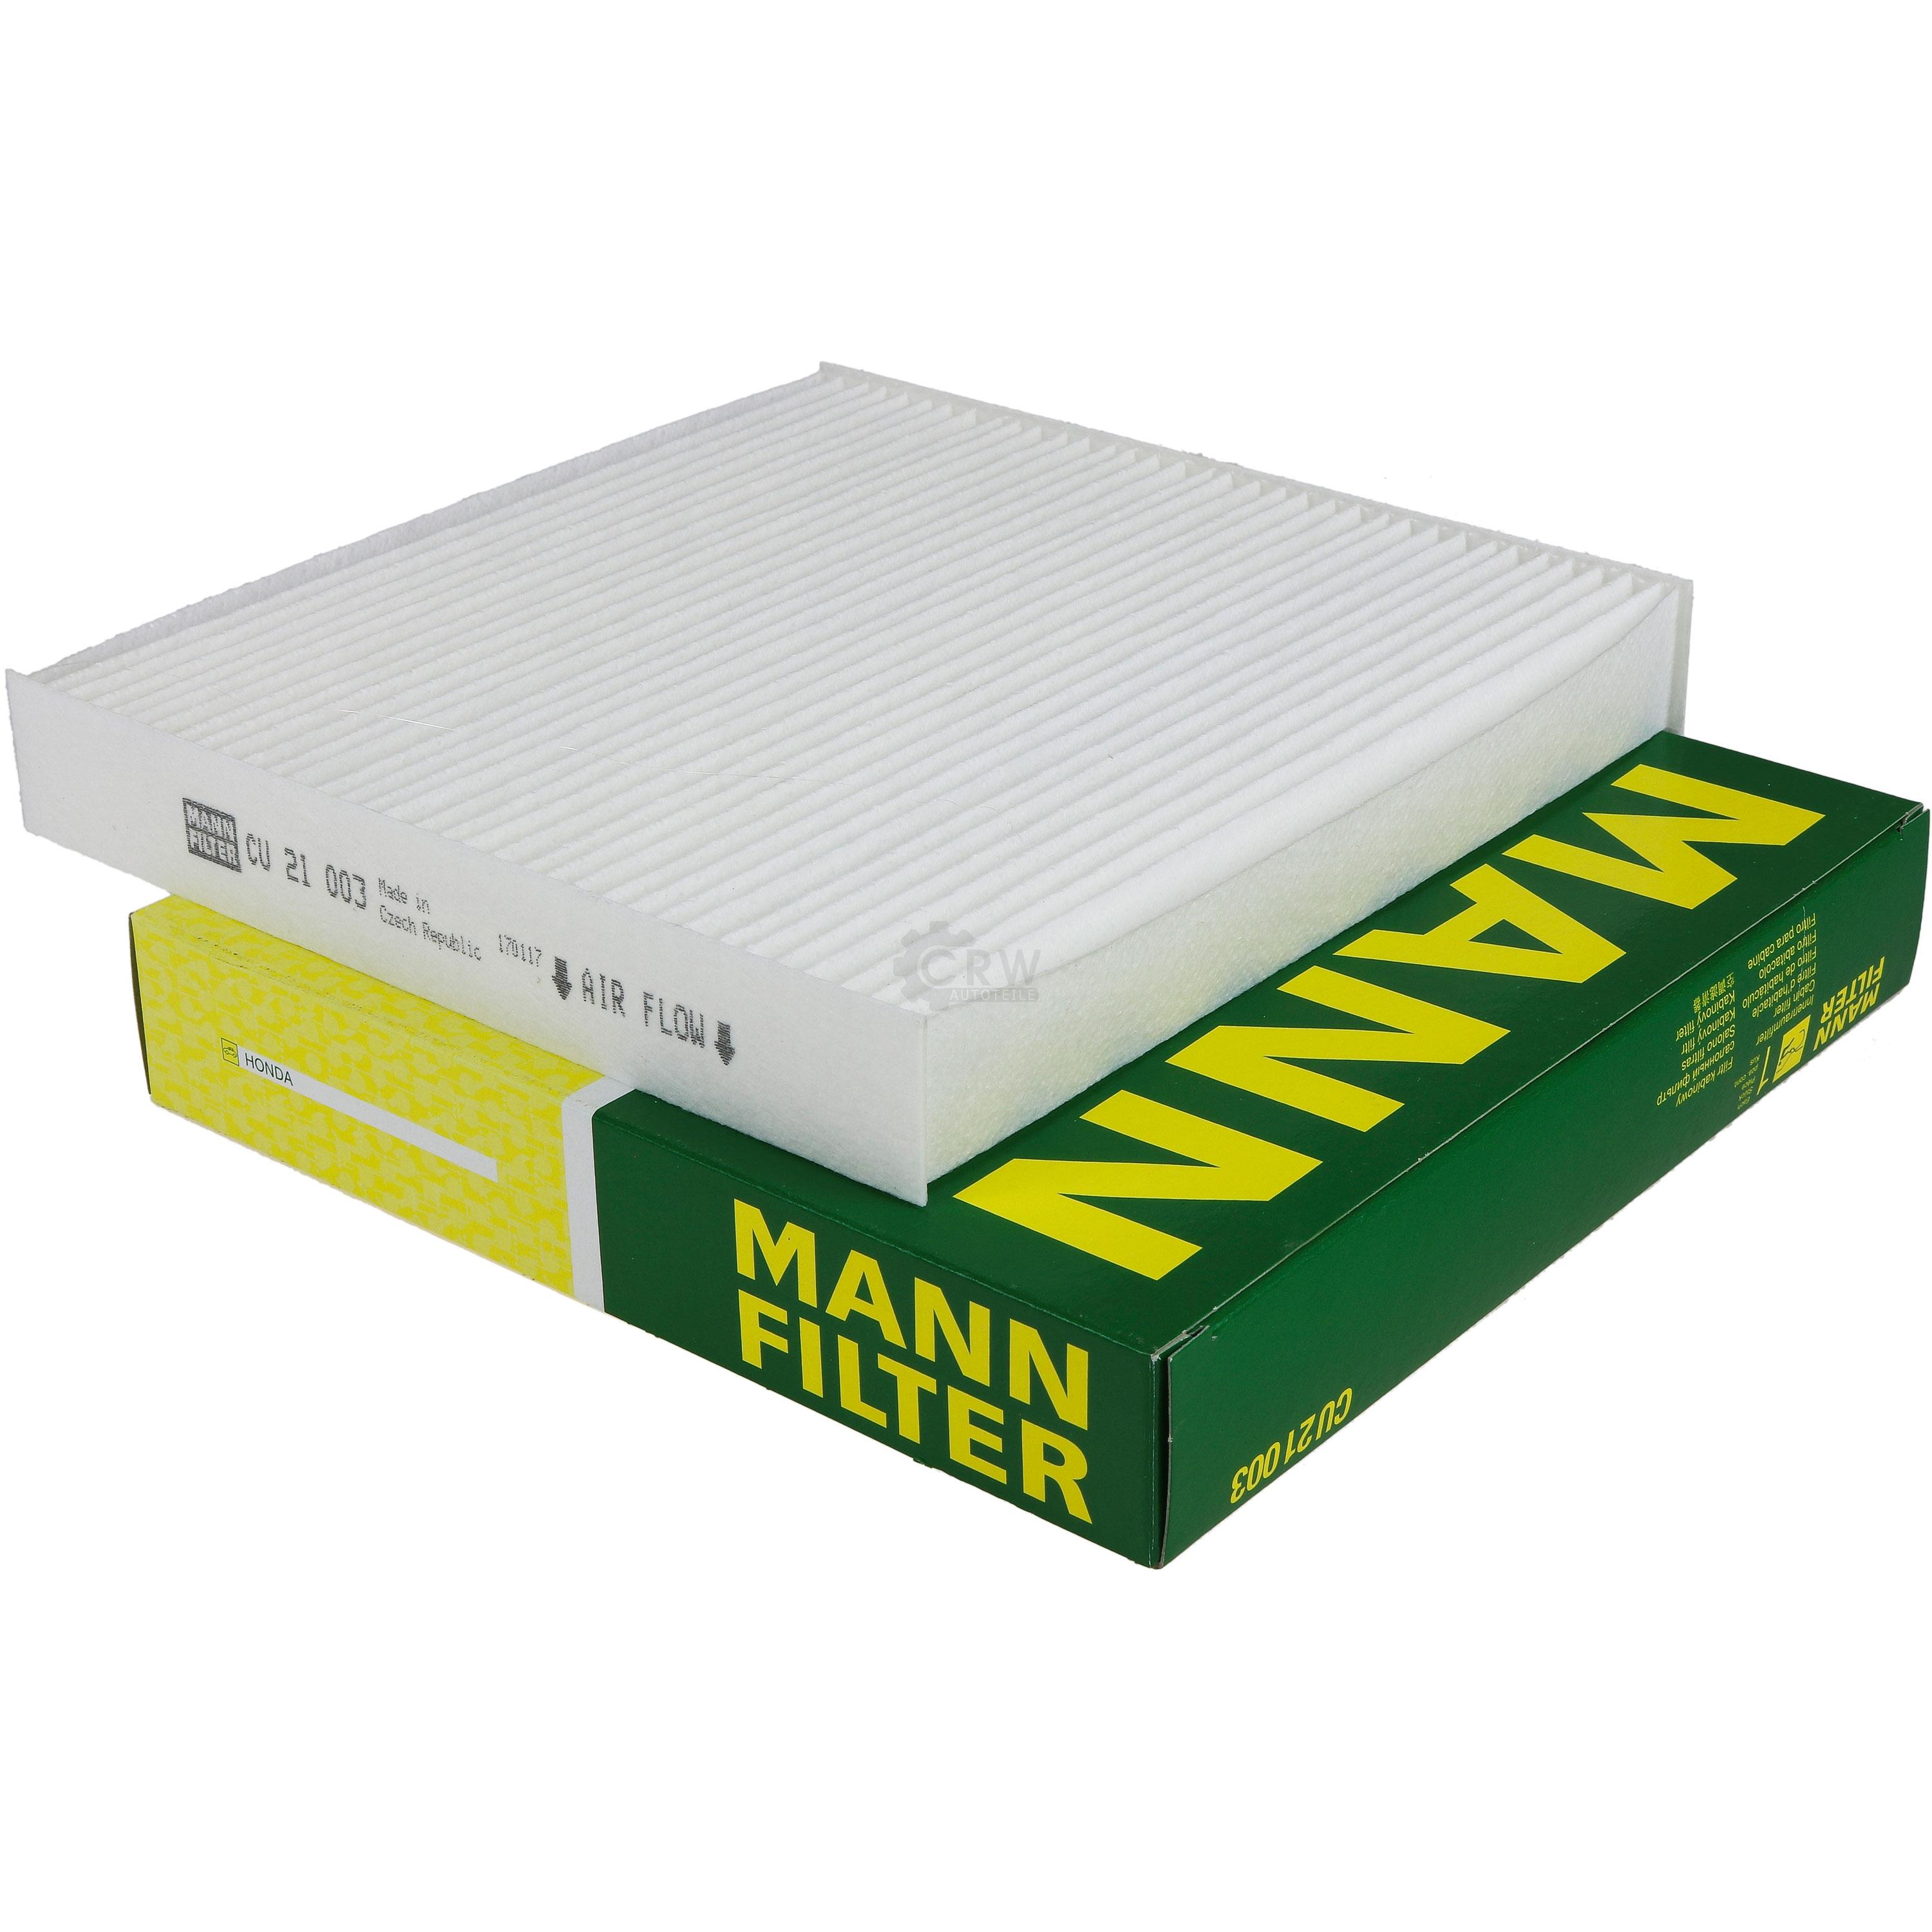 MANN-FILTER Innenraumfilter Pollenfilter CU 21 003